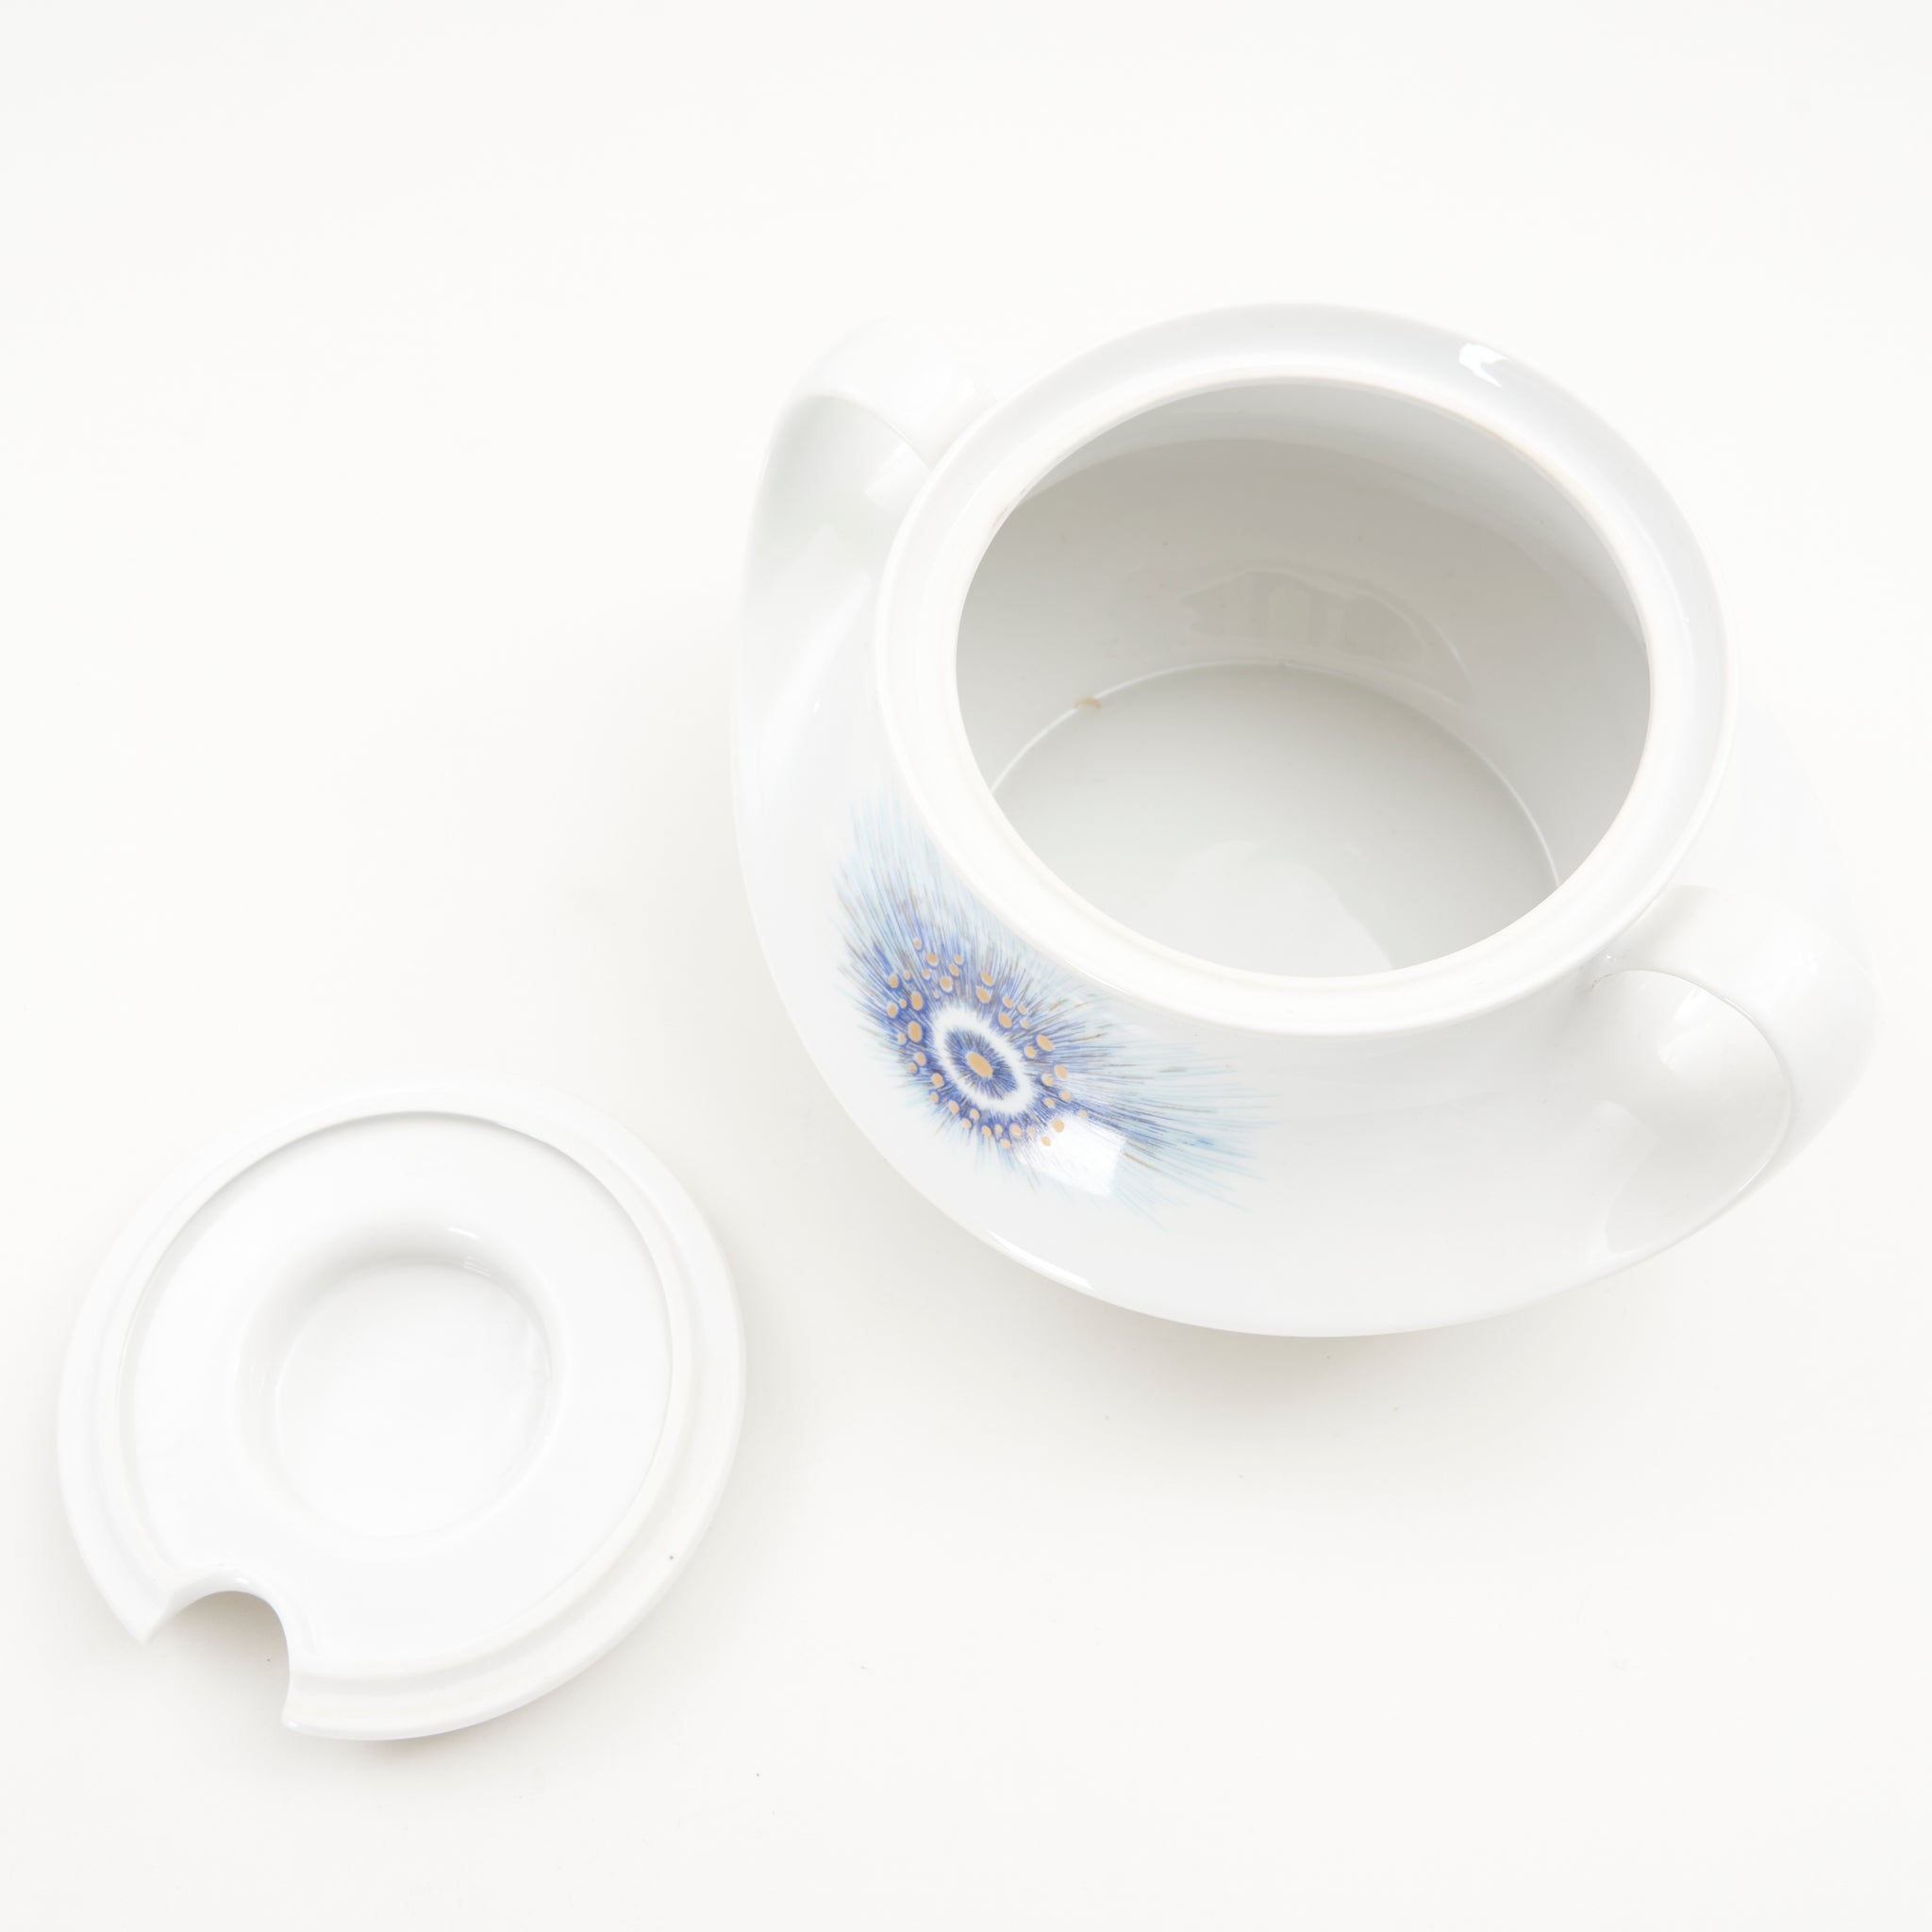 Johann Seltmann 'Marina' Porcelain Soup Tureen